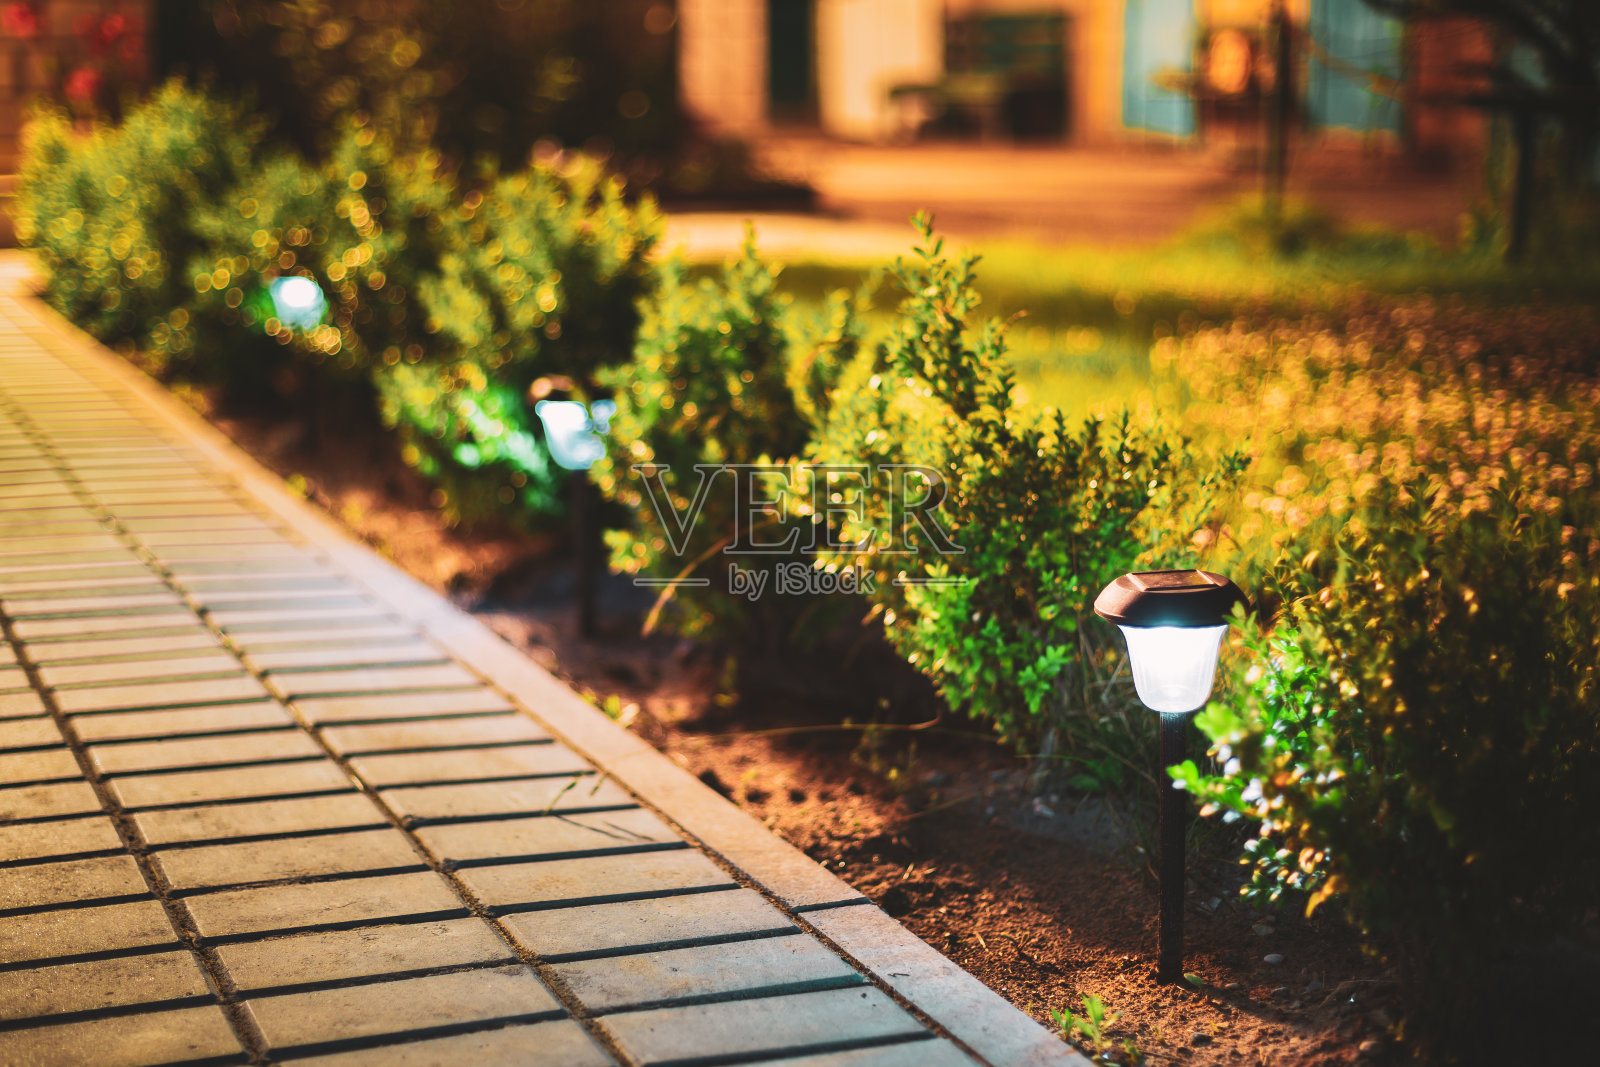 太阳能节能灯照明下的花坛夜景照片摄影图片